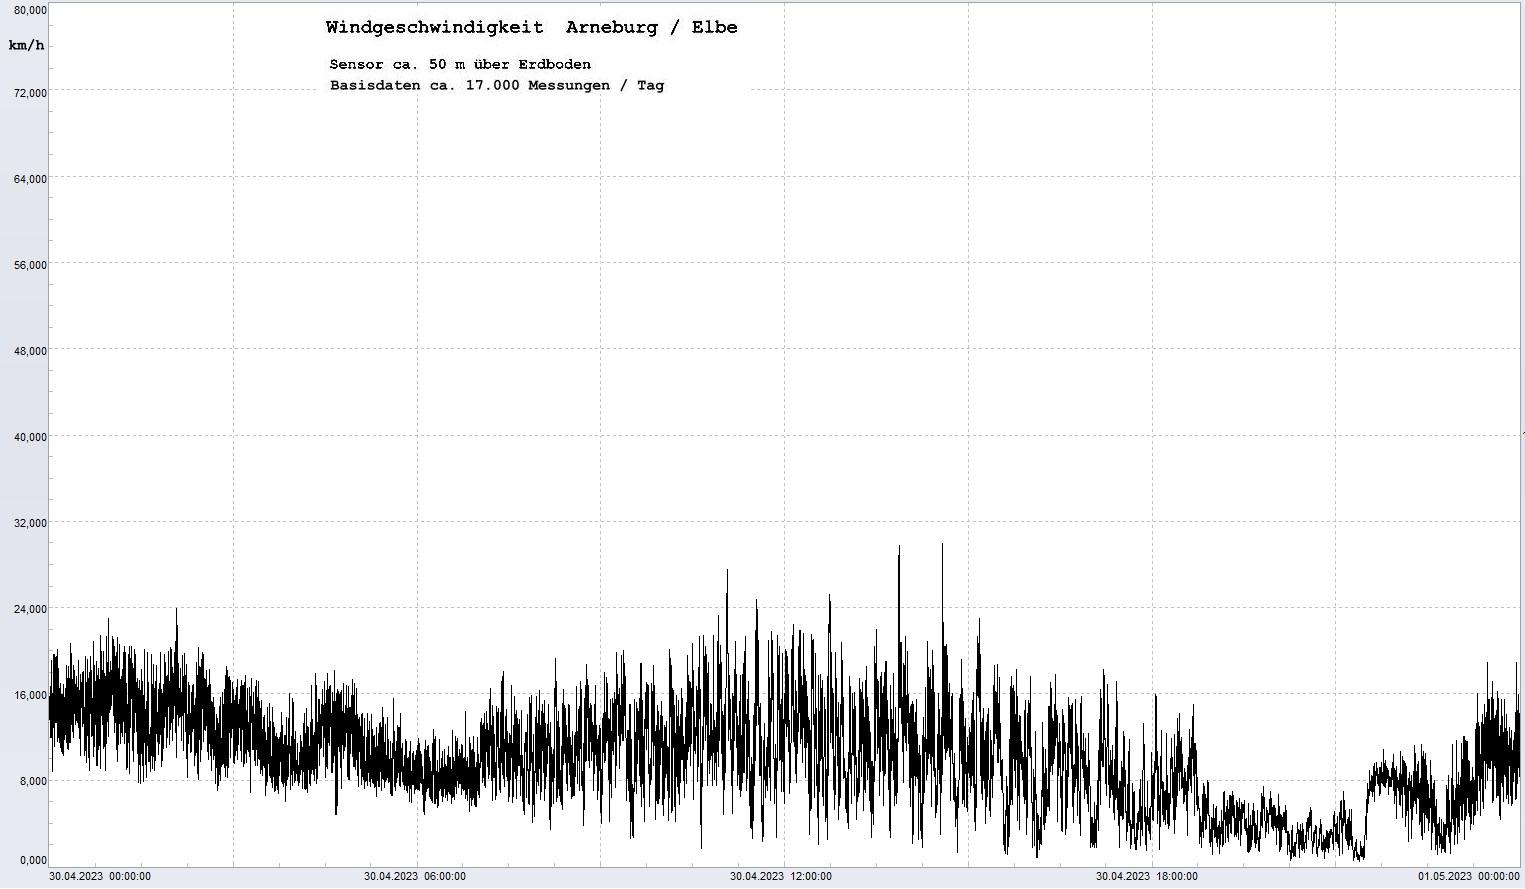 Arneburg Tages-Diagramm Winddaten, 30.04.2023
  Diagramm, Sensor auf Gebäude, ca. 50 m über Erdboden, Basis: 5s-Aufzeichnung